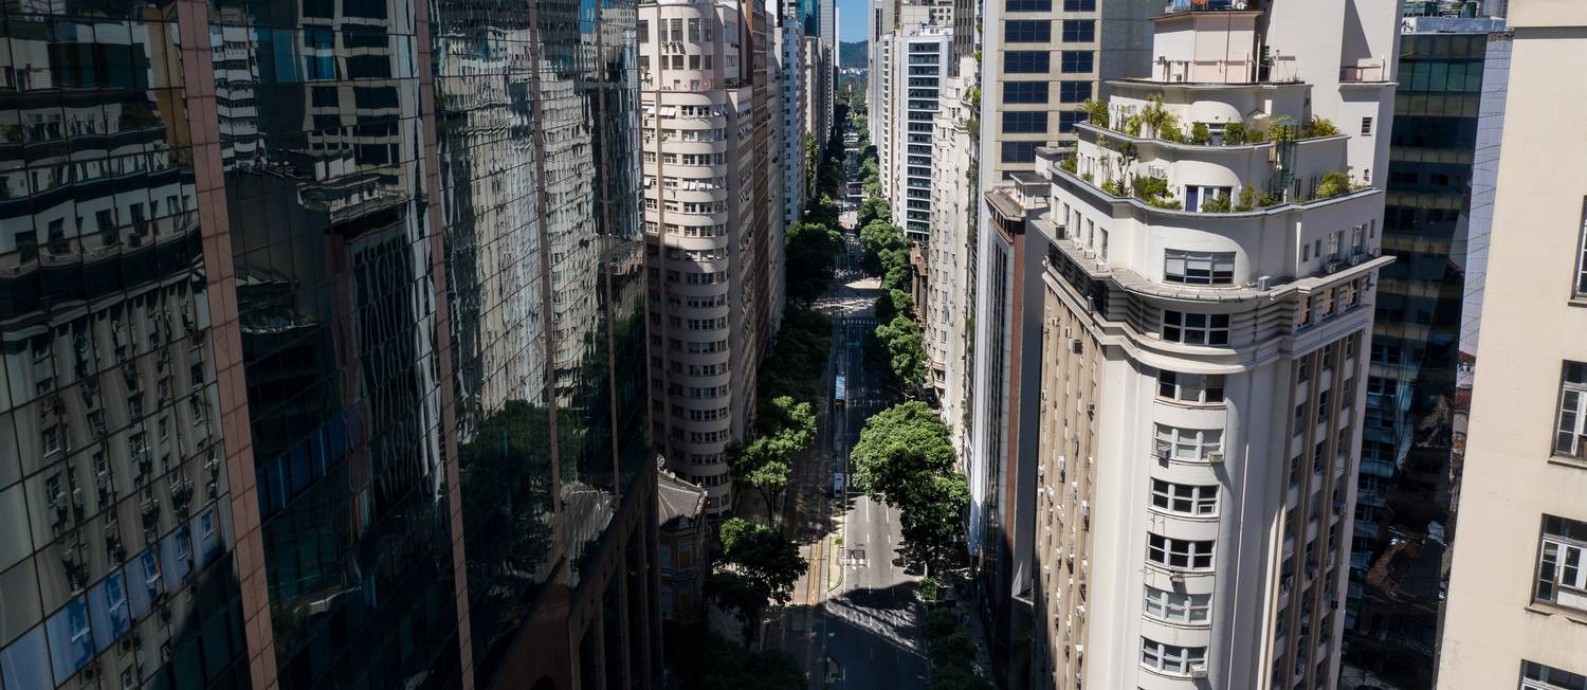 Metamorfose urbana: a transformação de imóveis comerciais em moradias é apontada como solução para evitar o esvaziamento da região central Foto: Brenno Carvalho / Agência O Globo